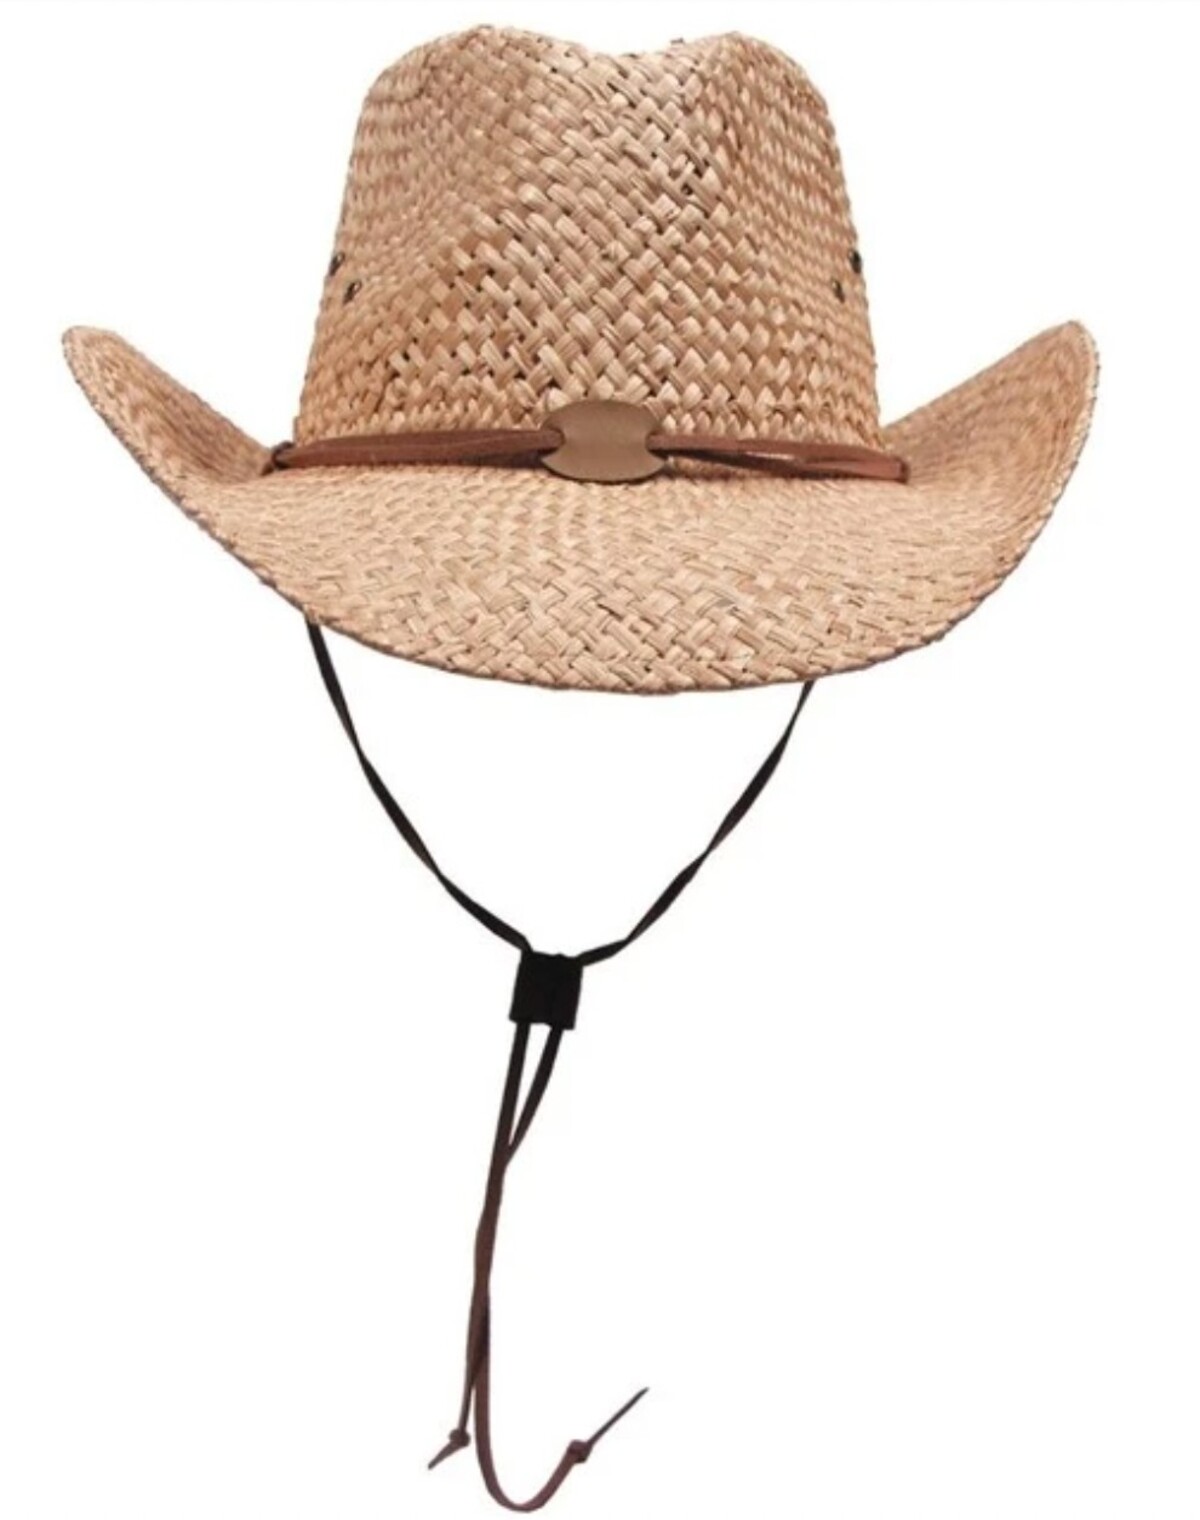 Outdoorový kovbójsky klobúk so šnúrkou ťa nevyjde veľa a dokonale oživý outfit. Za tento konkrétny model zaplatíš len 14,60 eura.